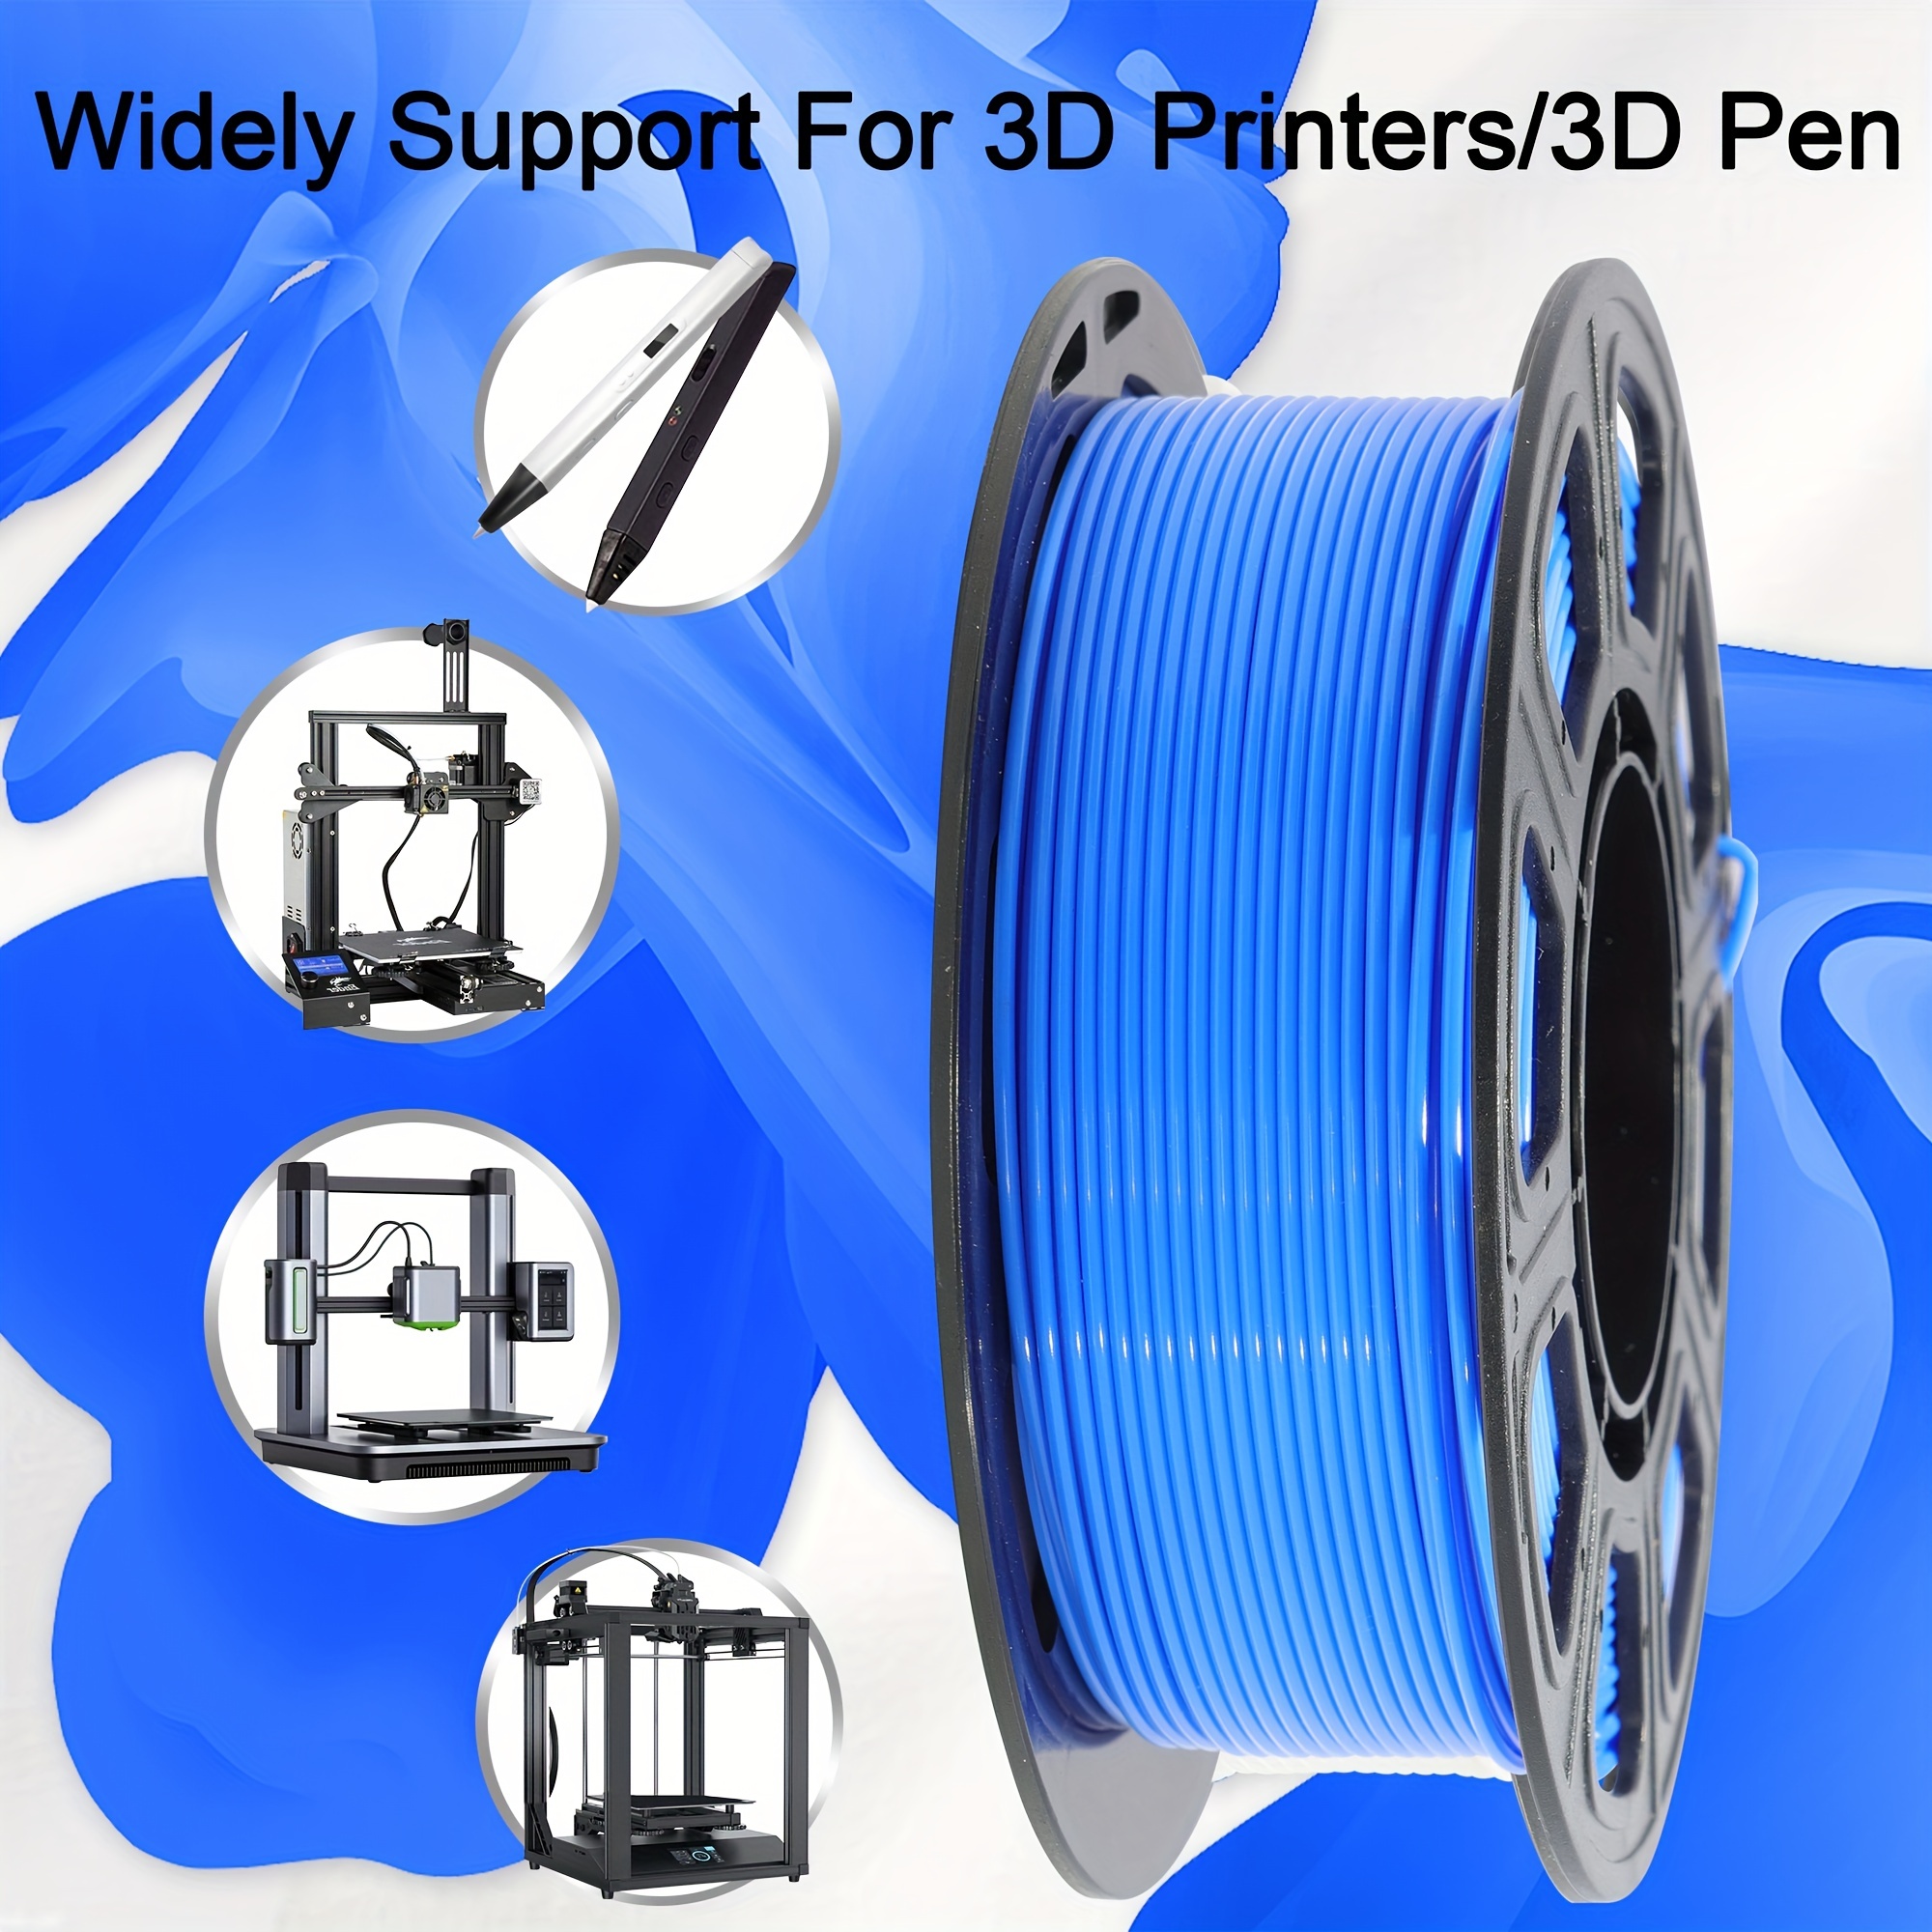 IWECOLOR Silk PLA Filament D'imprimante 3D Triple Couleurs Co-extrusion Filament  D'impression 3D Précision